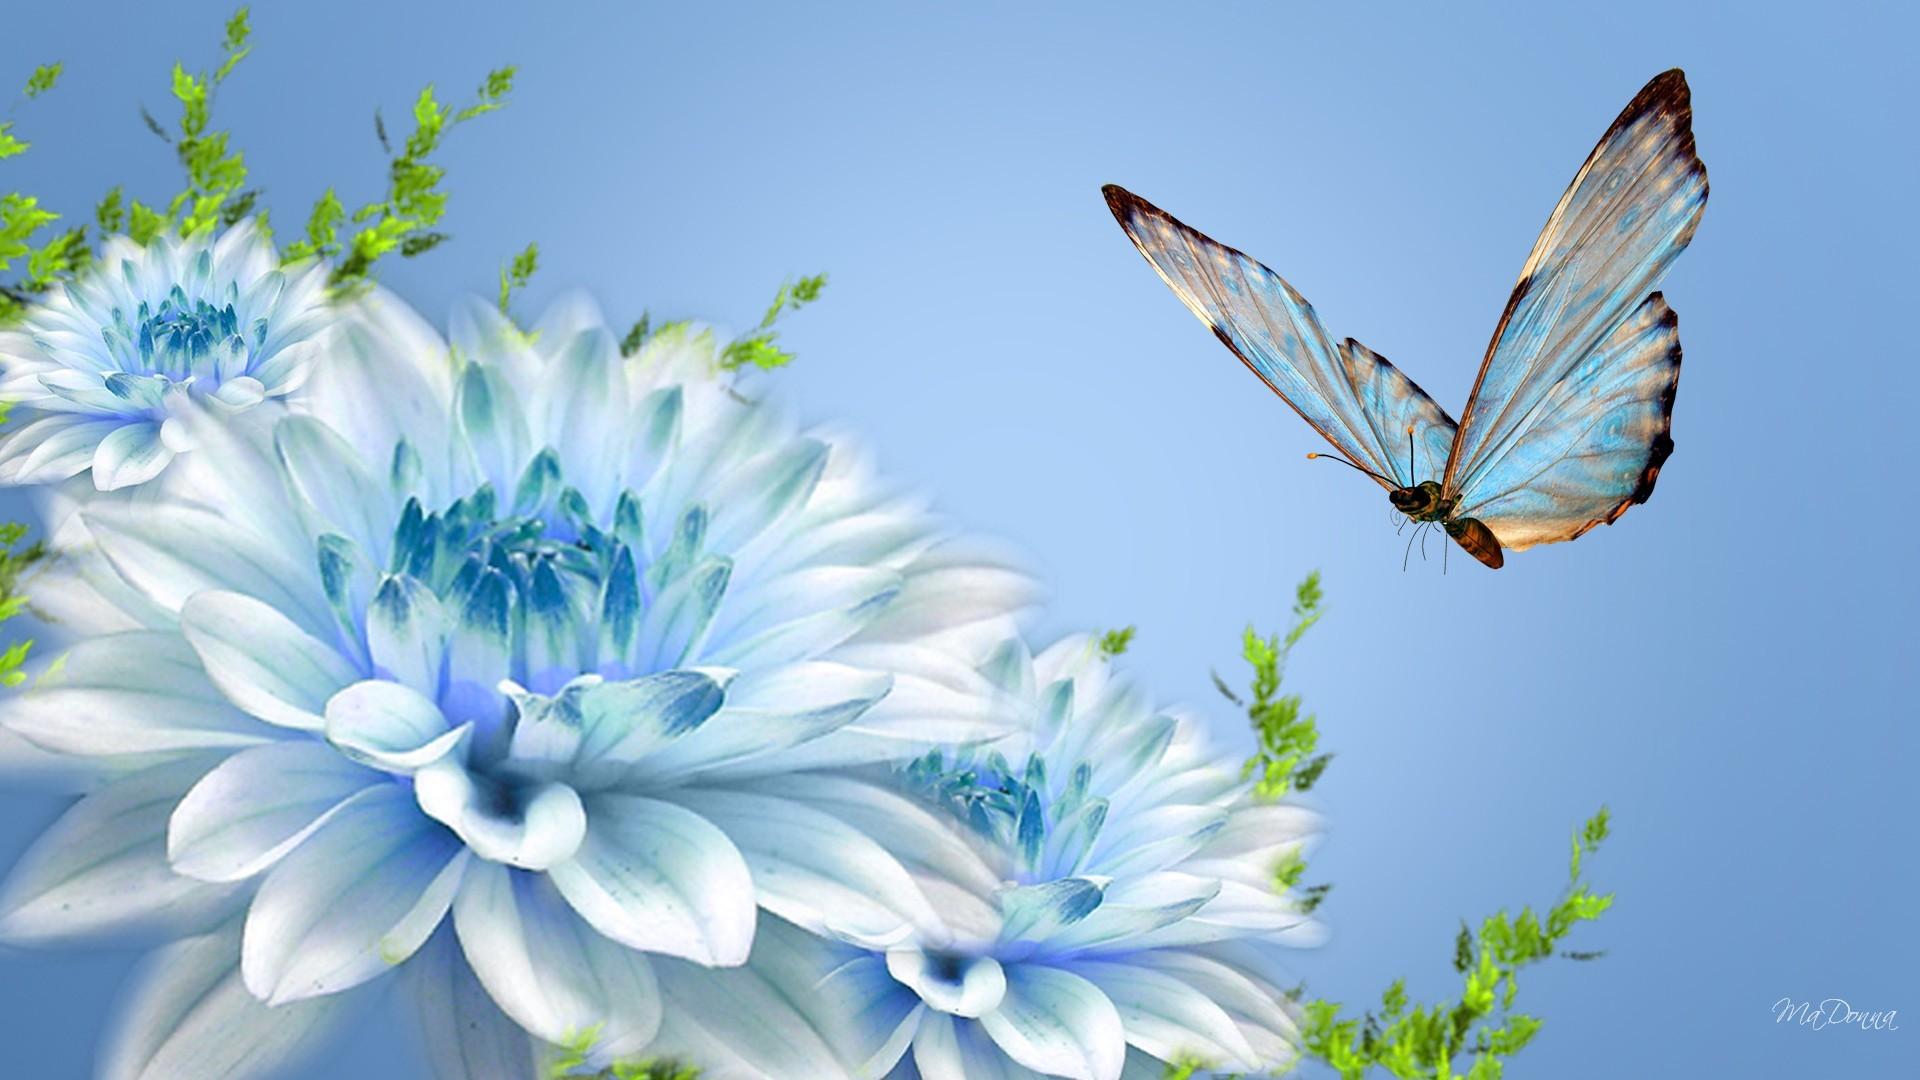 Butterfly Desktop Wallpaper